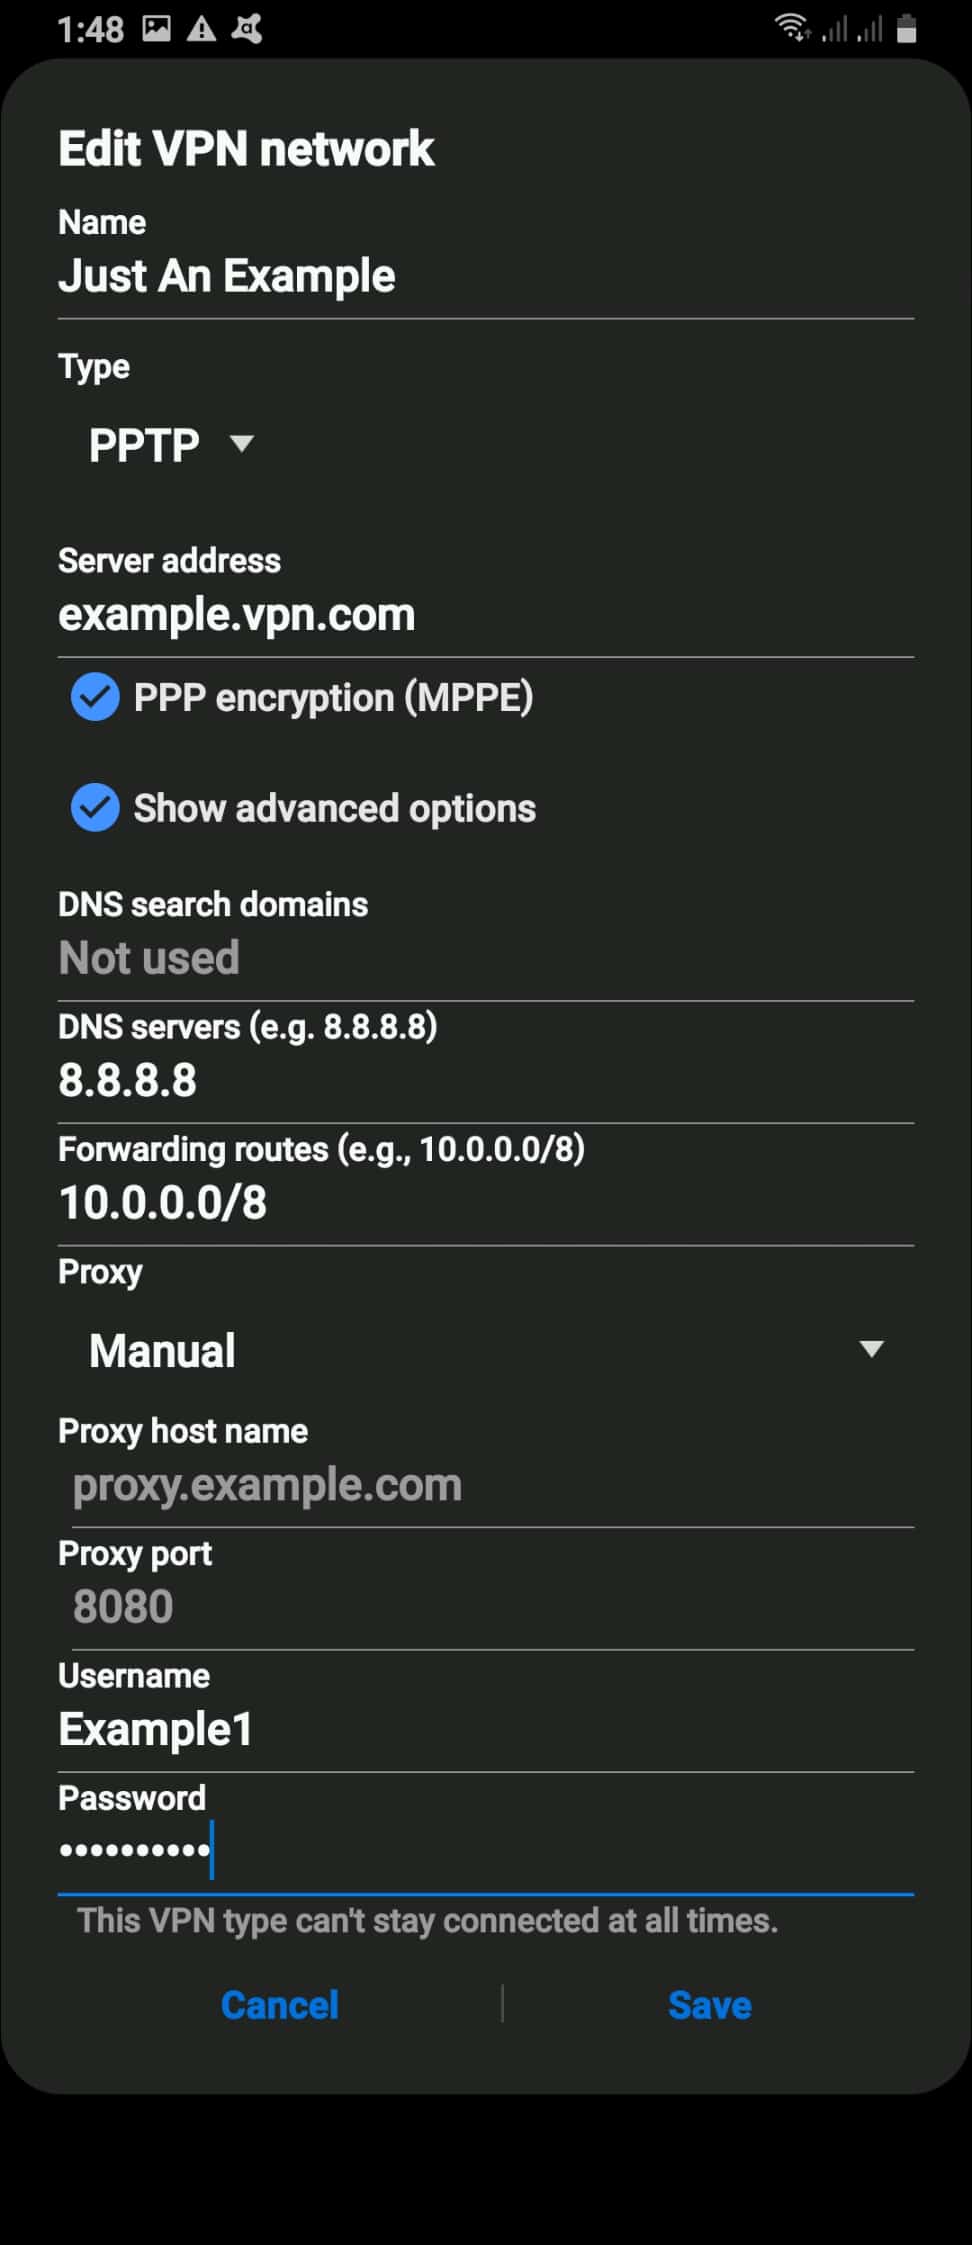 How should I set my VPN?